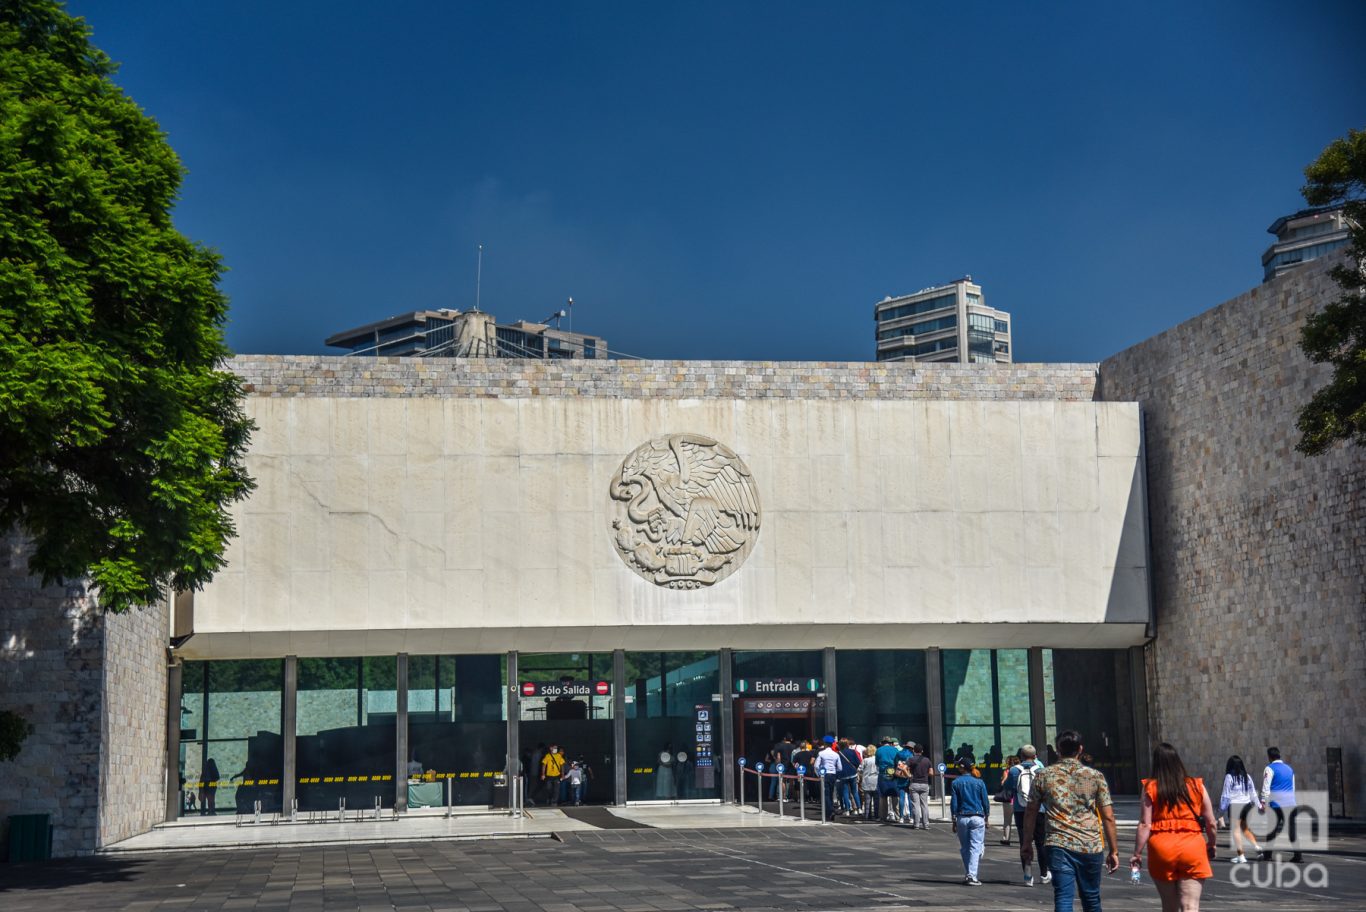 El 17 de septiembre de 1964 abrieron las puertas al público de la sede actual del Museo Nacional de Antropología de México. Foto: Kaloian.